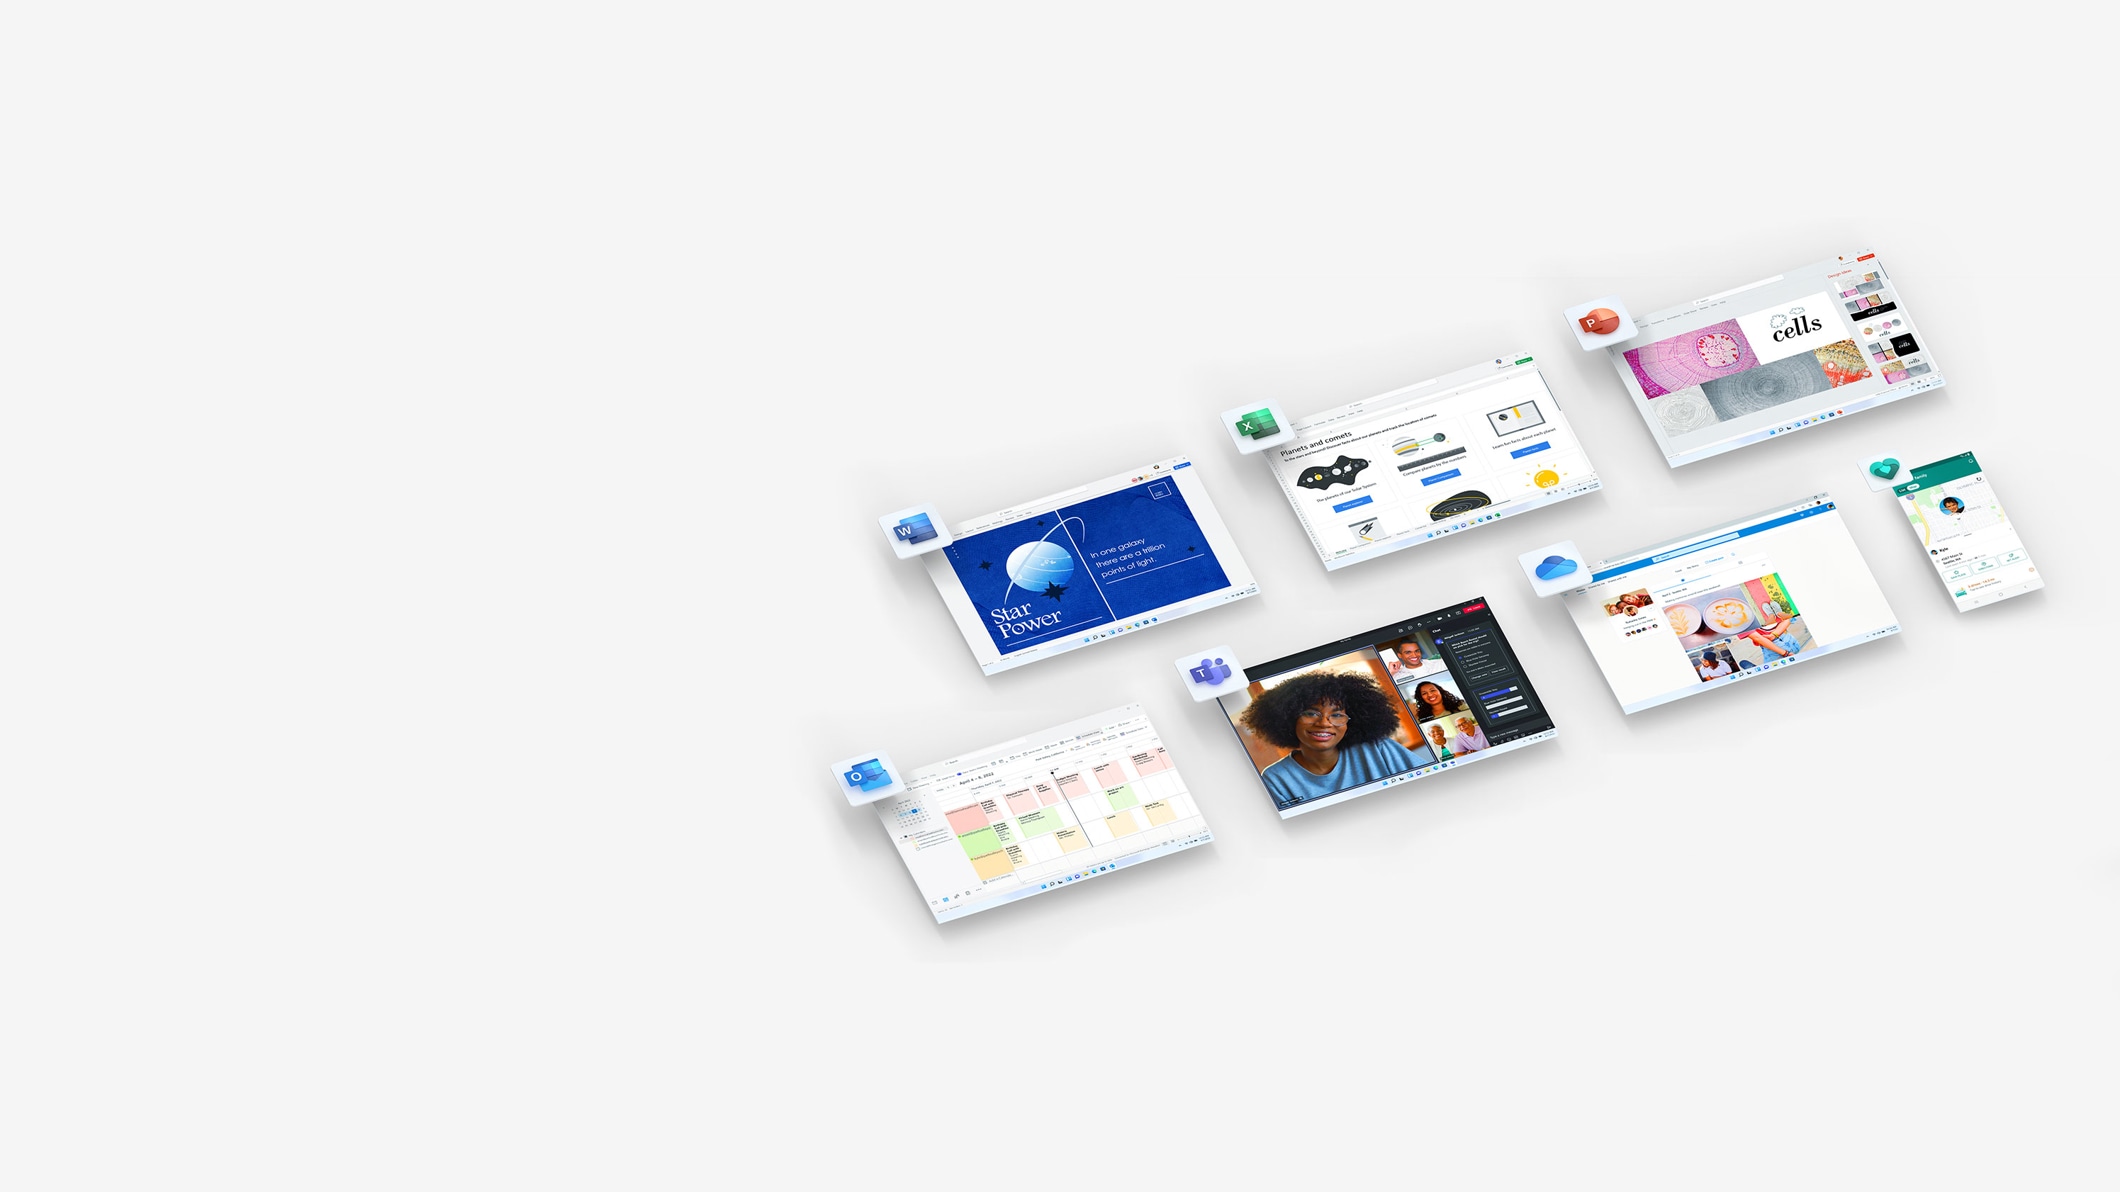 Verschiedene Bildschirme zeigen Microsoft OneDrive, Excel, Word, PowerPoint und Outlook.